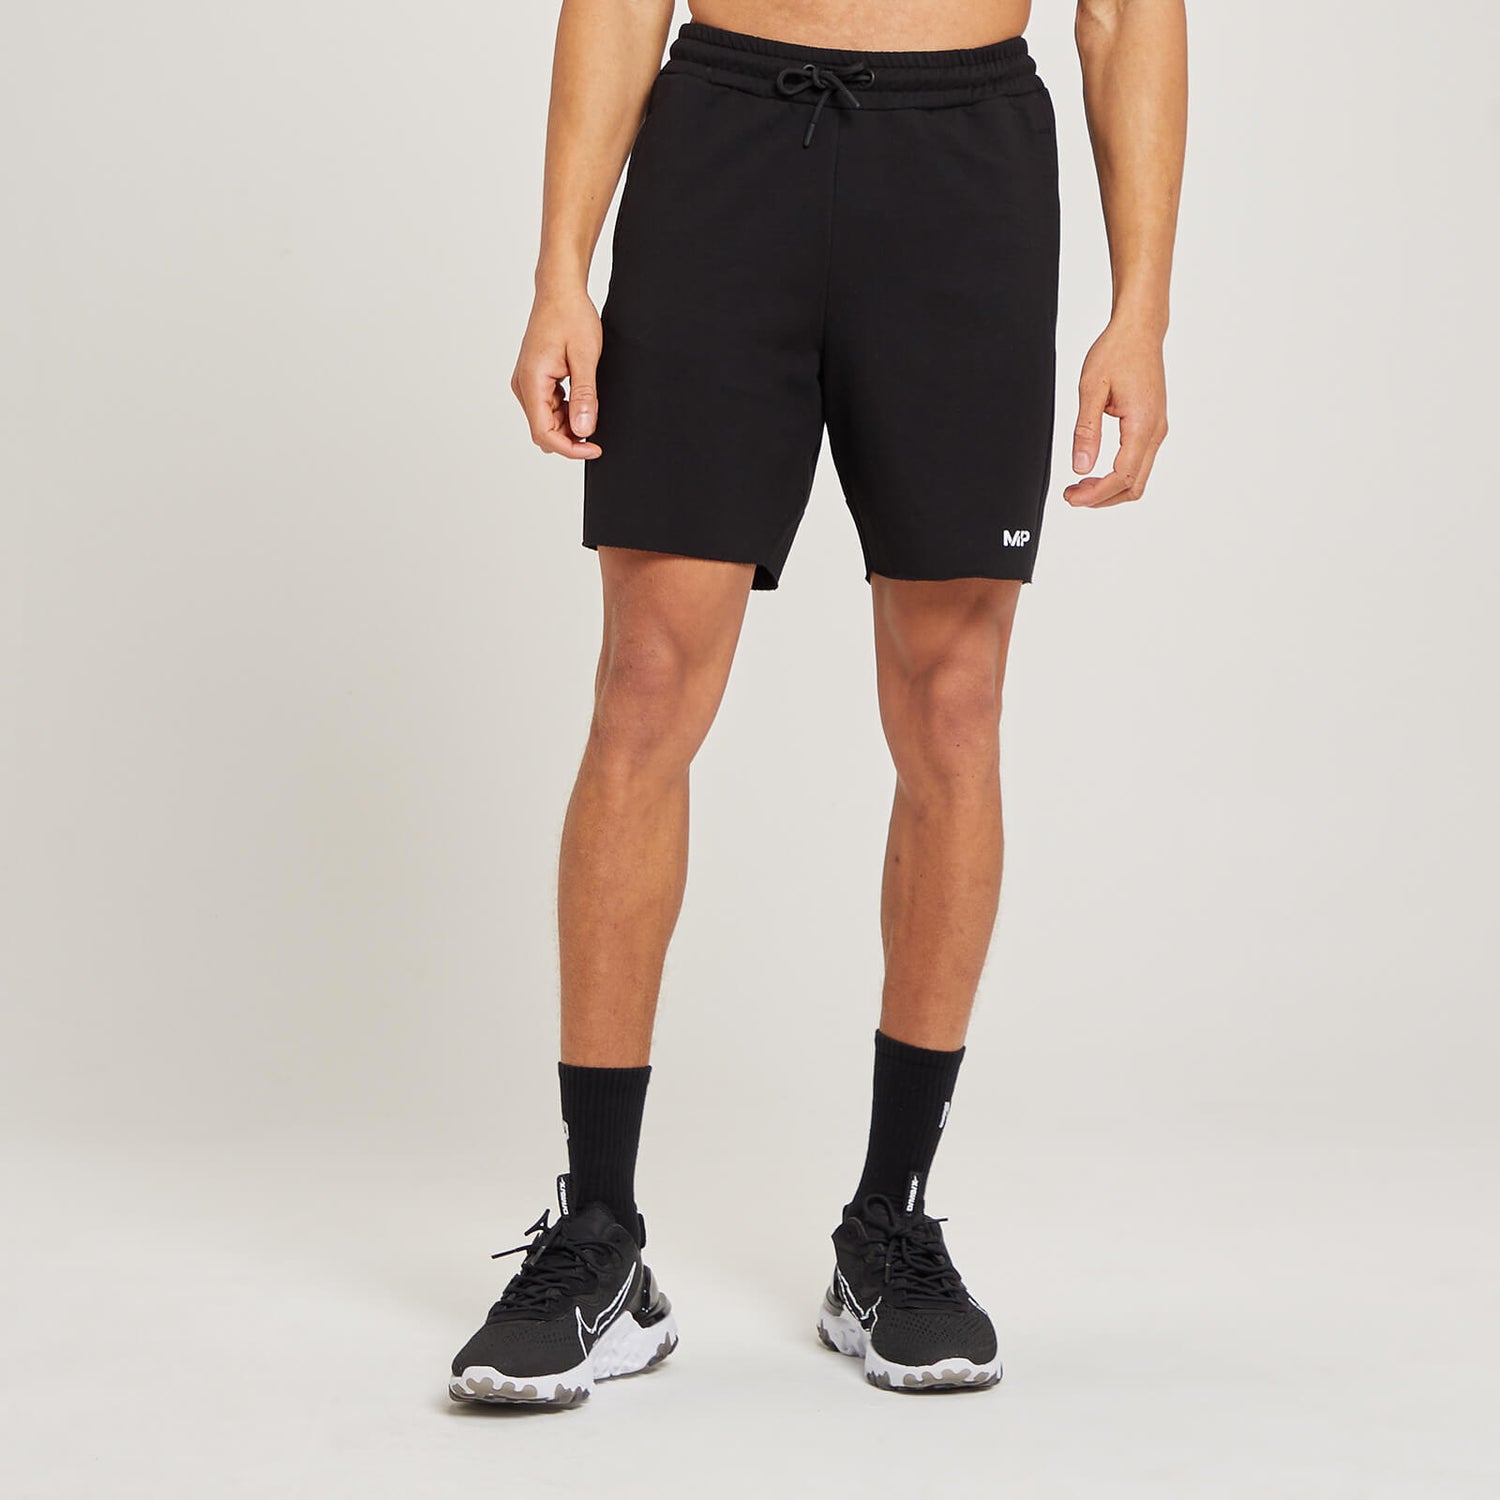 Form挺拔系列男士运动短裤 - 黑色 - XS